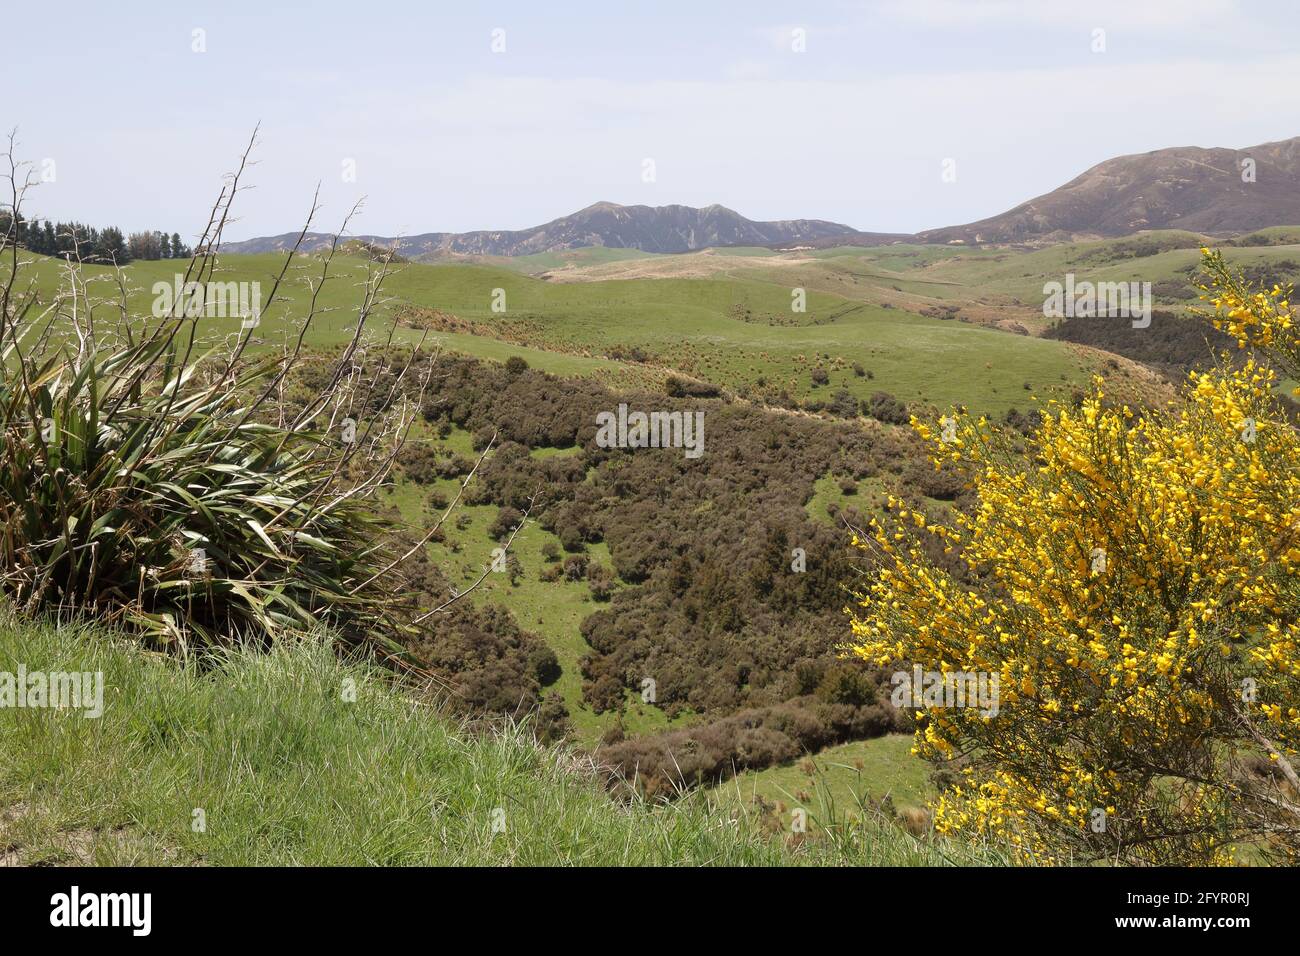 Neuseeland - Landschaft Mangaohane Gegend / New Zealand - Landscape Mangaohane Area / Stock Photo